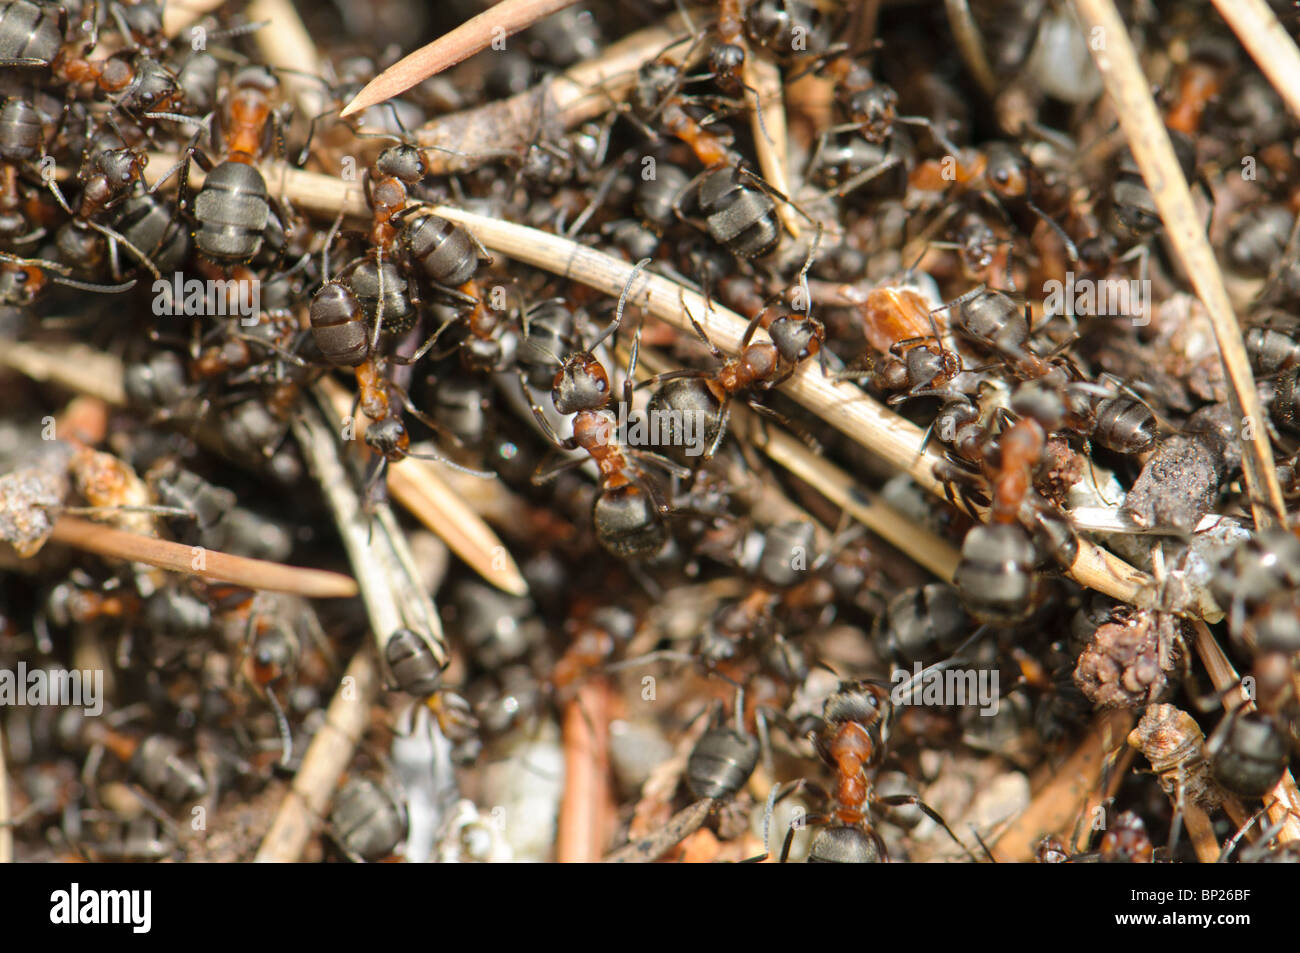 Ameisenhaufen von Formica Rufa, Pyrenäen, Spanien Stockfoto